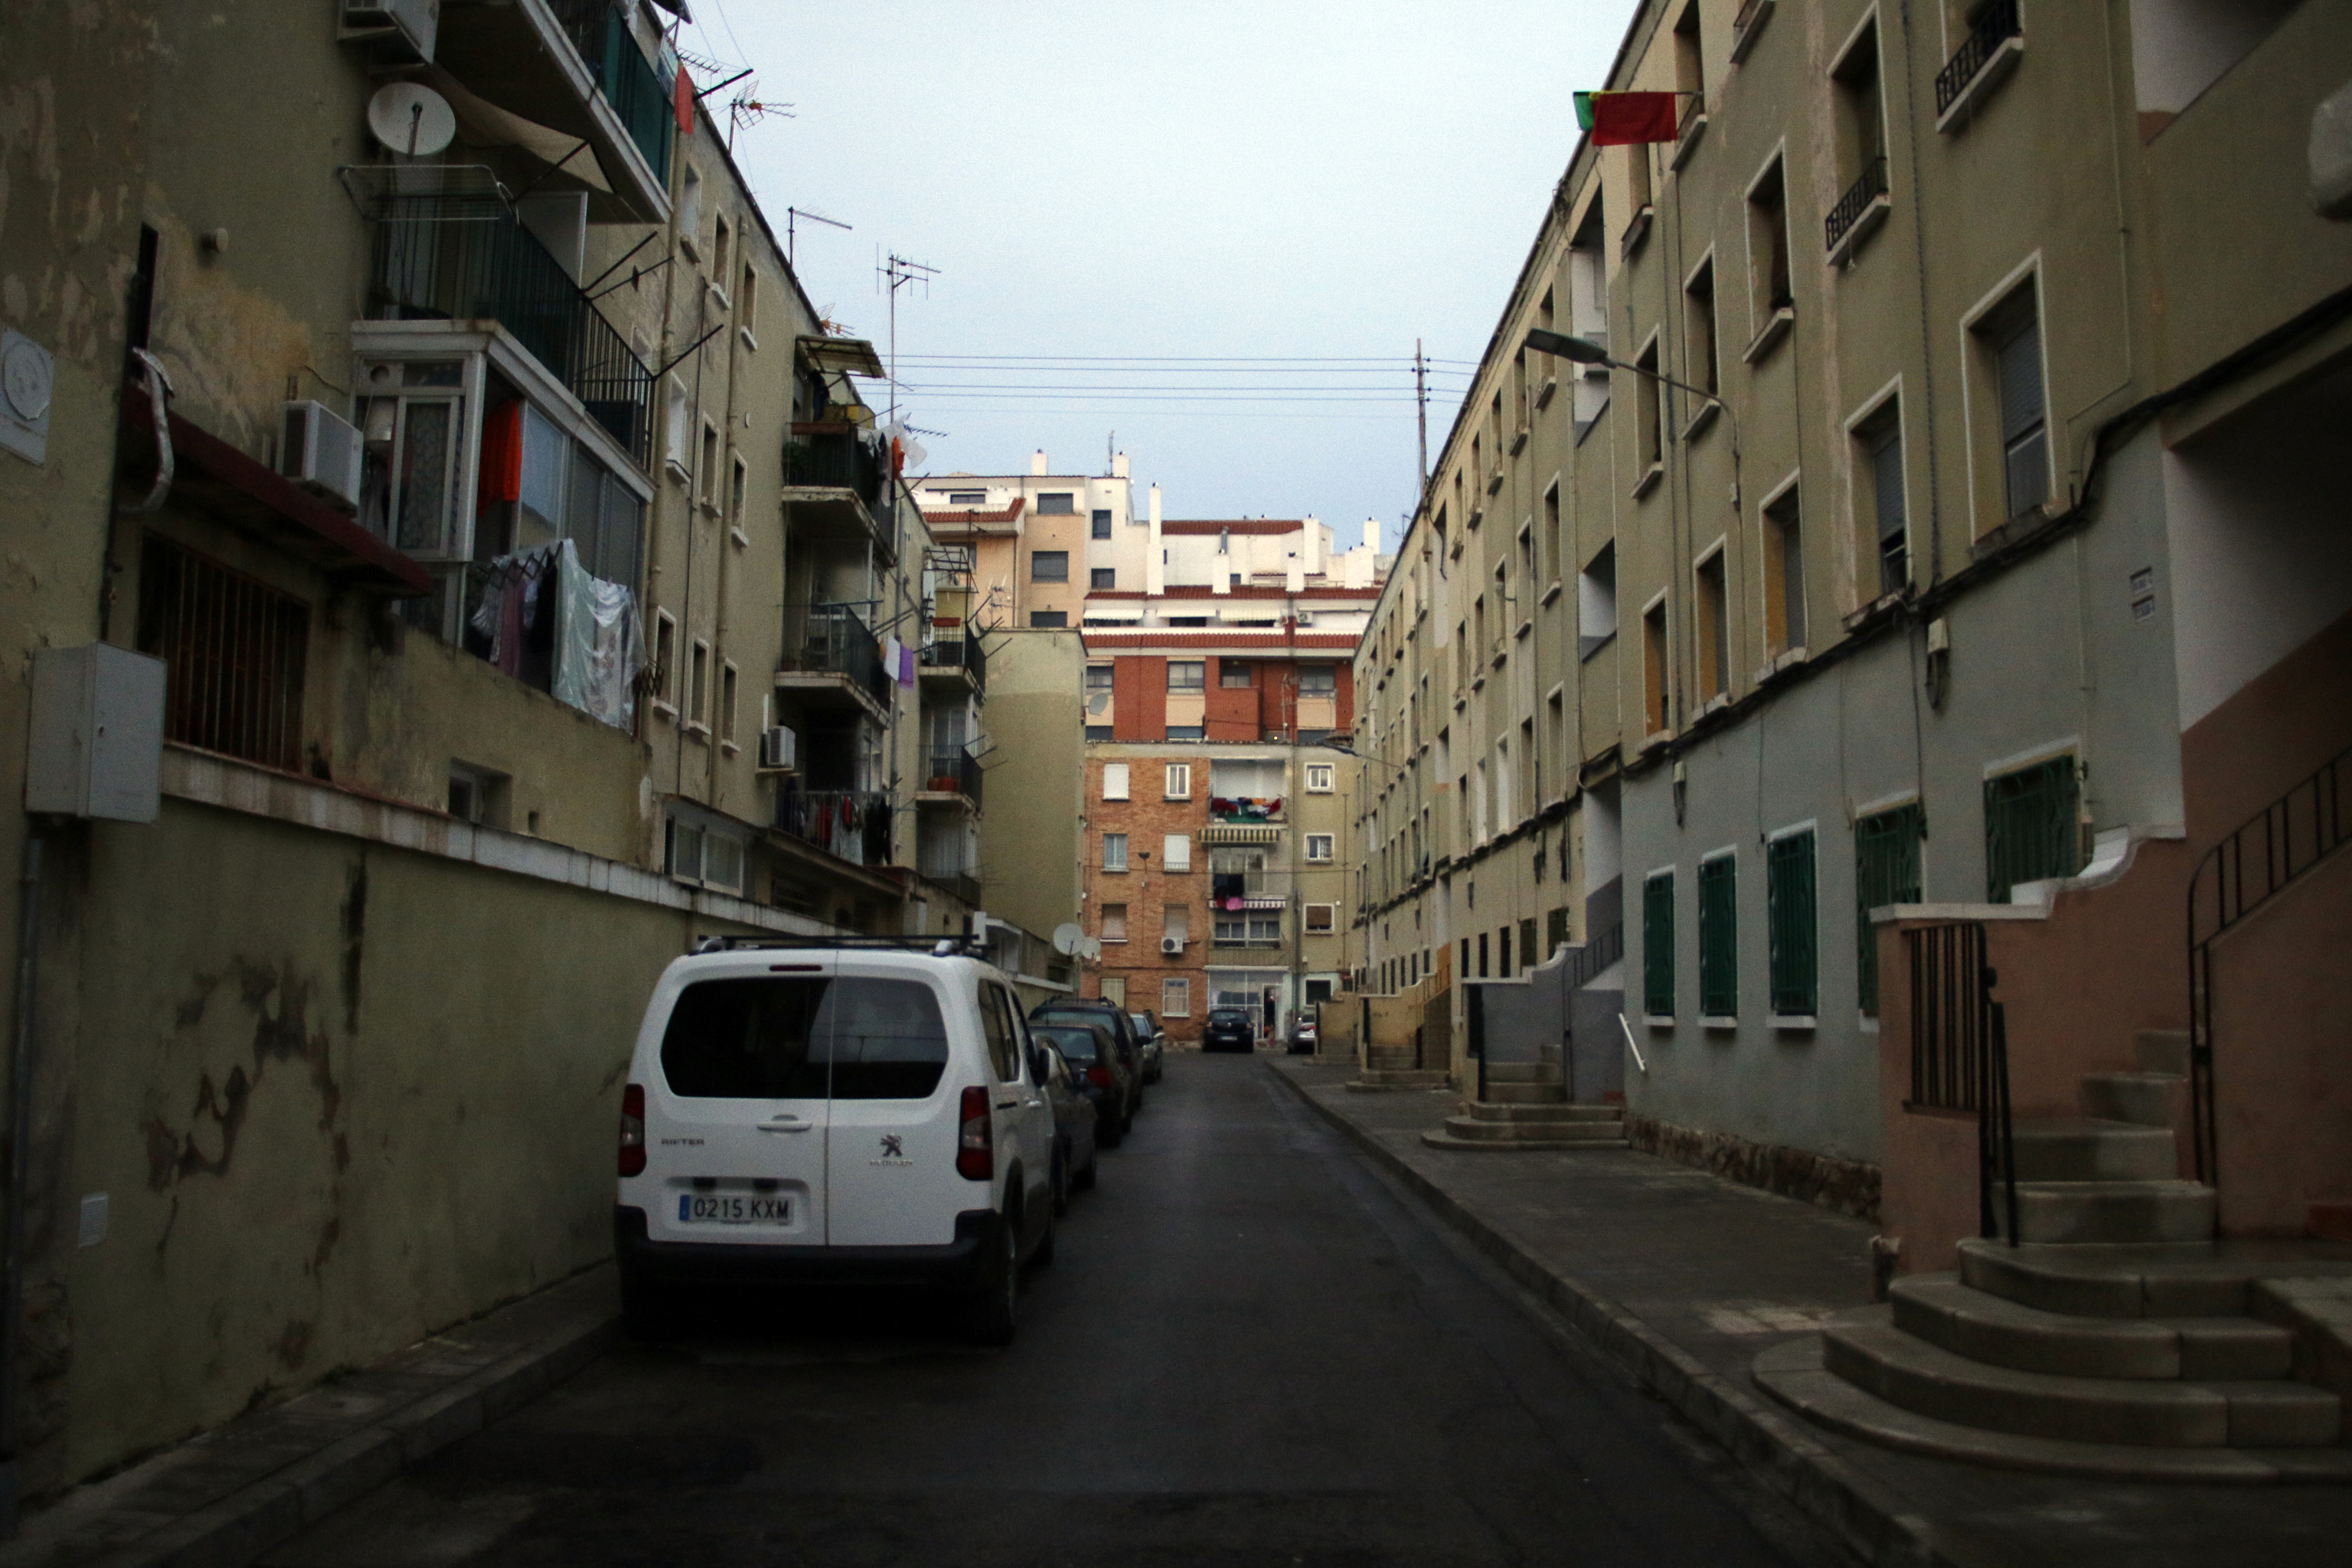 El barrio de La Guinea es uno de los cinco enclaves urbanos previstos para remodelar sus viviendas.